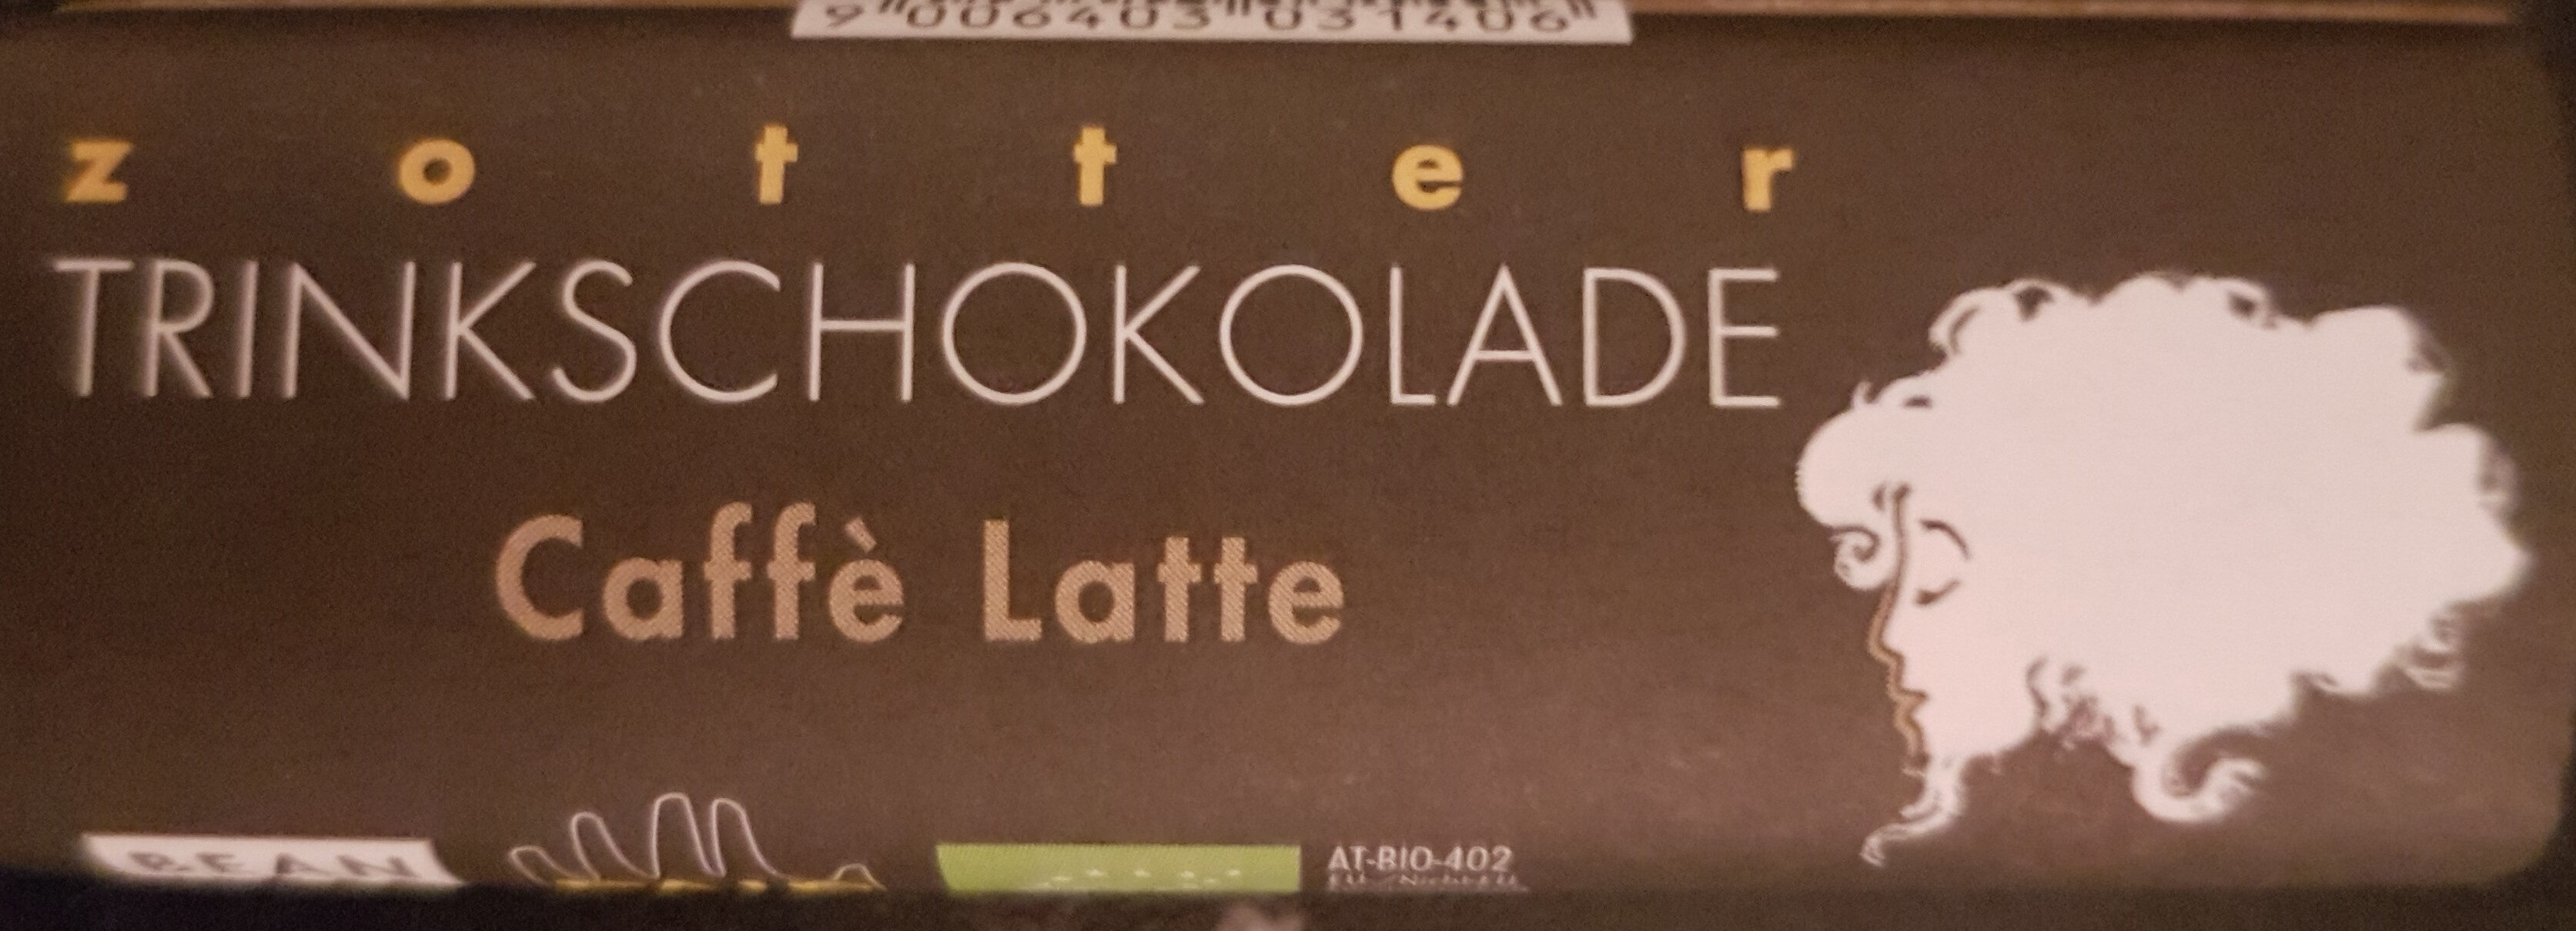 Trinkschokolade Caffe Latte - Produkt